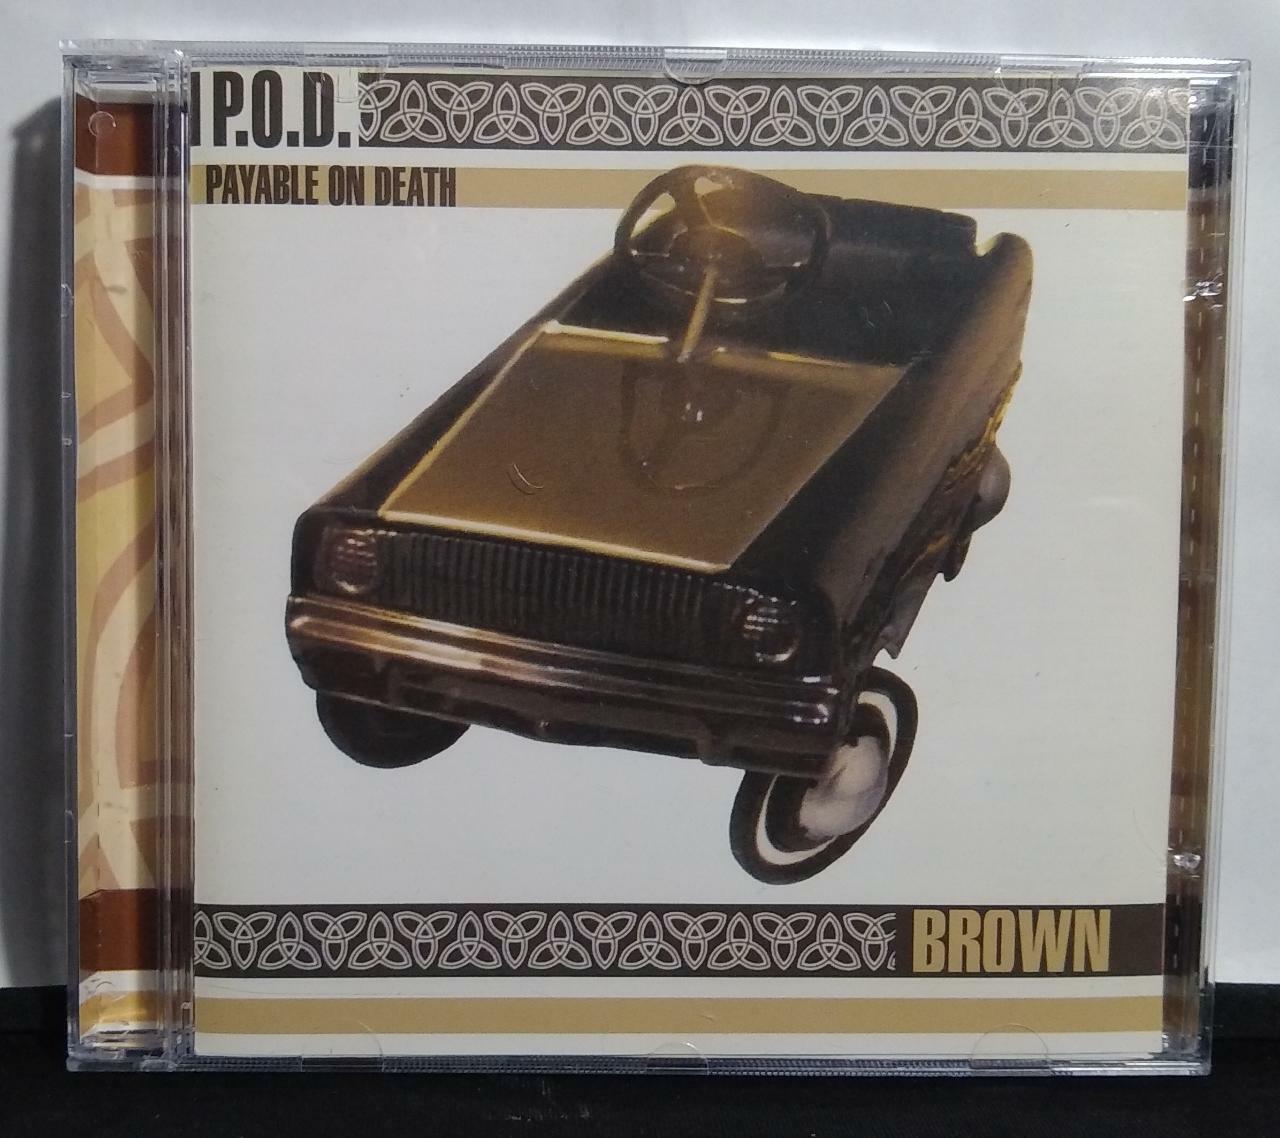 CD - P.O.D. - Brown